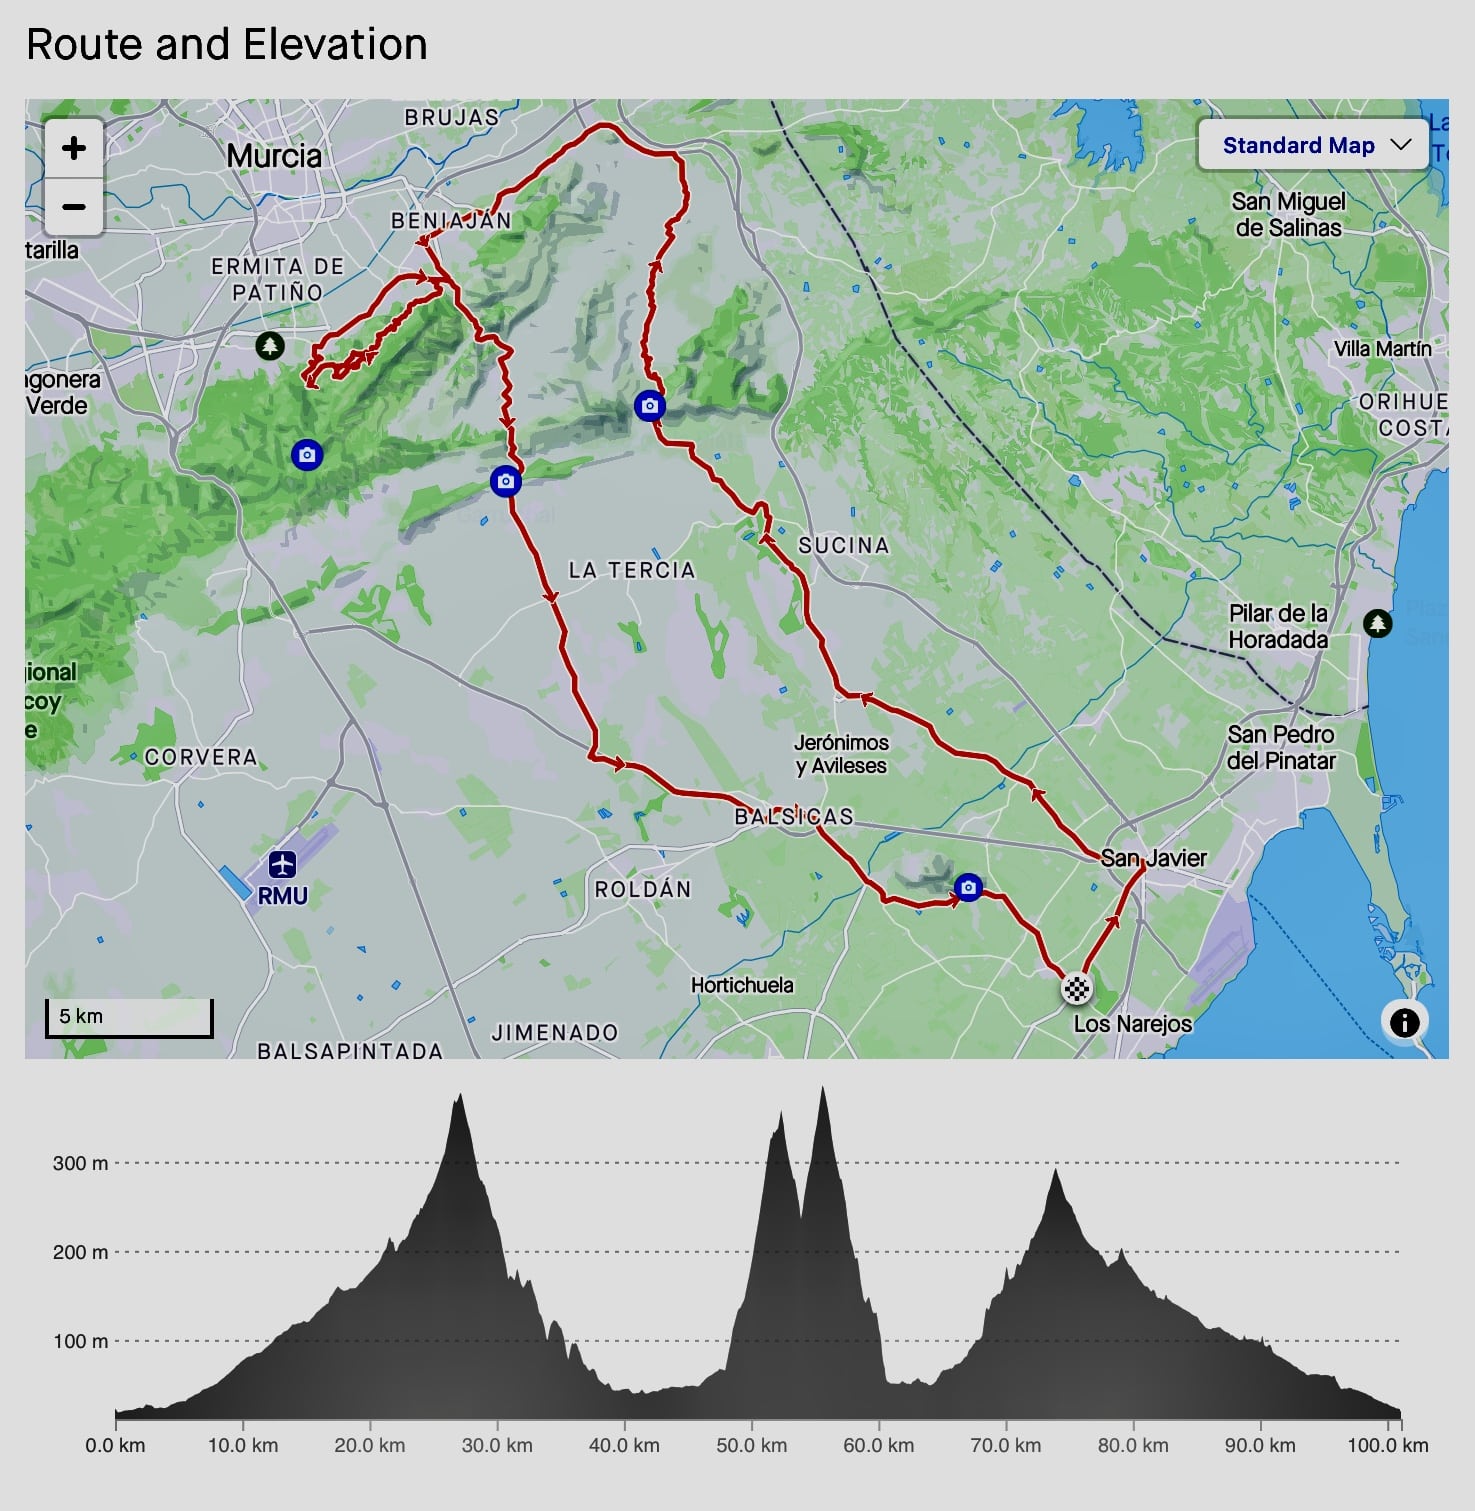 Roda Village - GPX Route 2 - Murcia Bike Hire - GPX Route Download